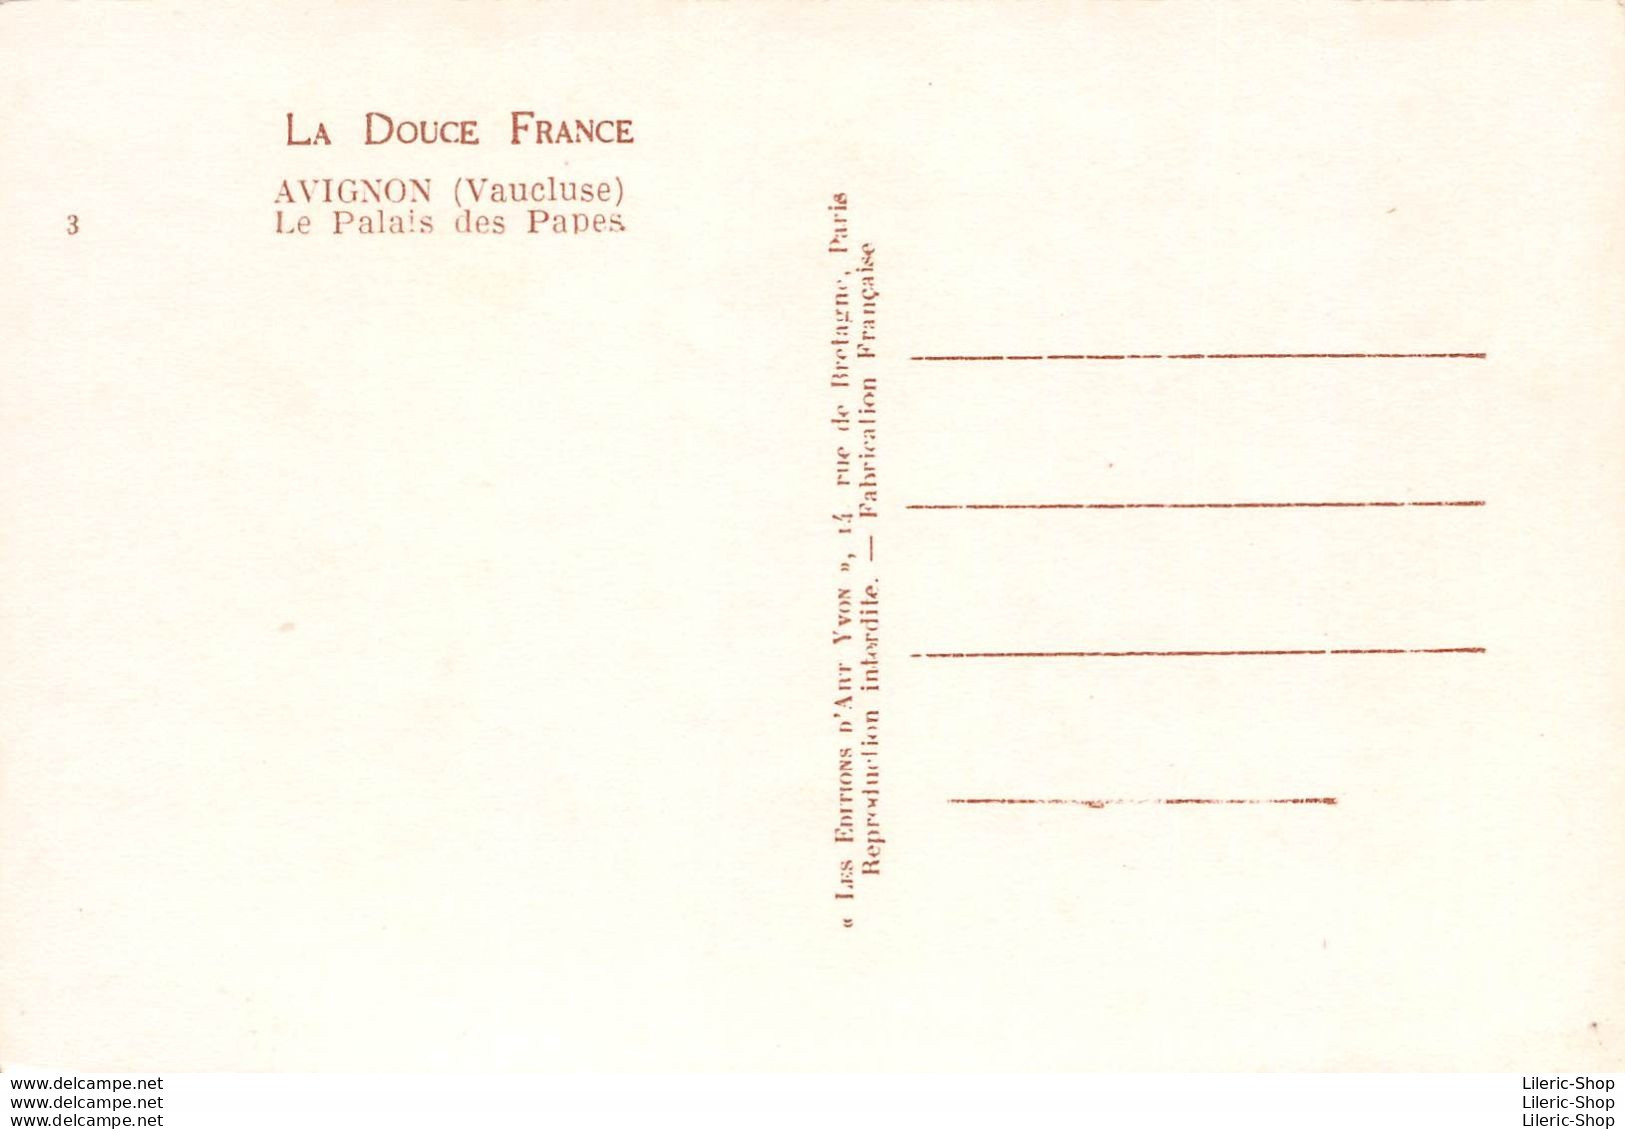 [84] AVIGNON - VOYAGE DANS LA CITÉ DES PAPES  - LOT DE 20 CPSM ± 1960 ÉDITIONS D'ART YVON